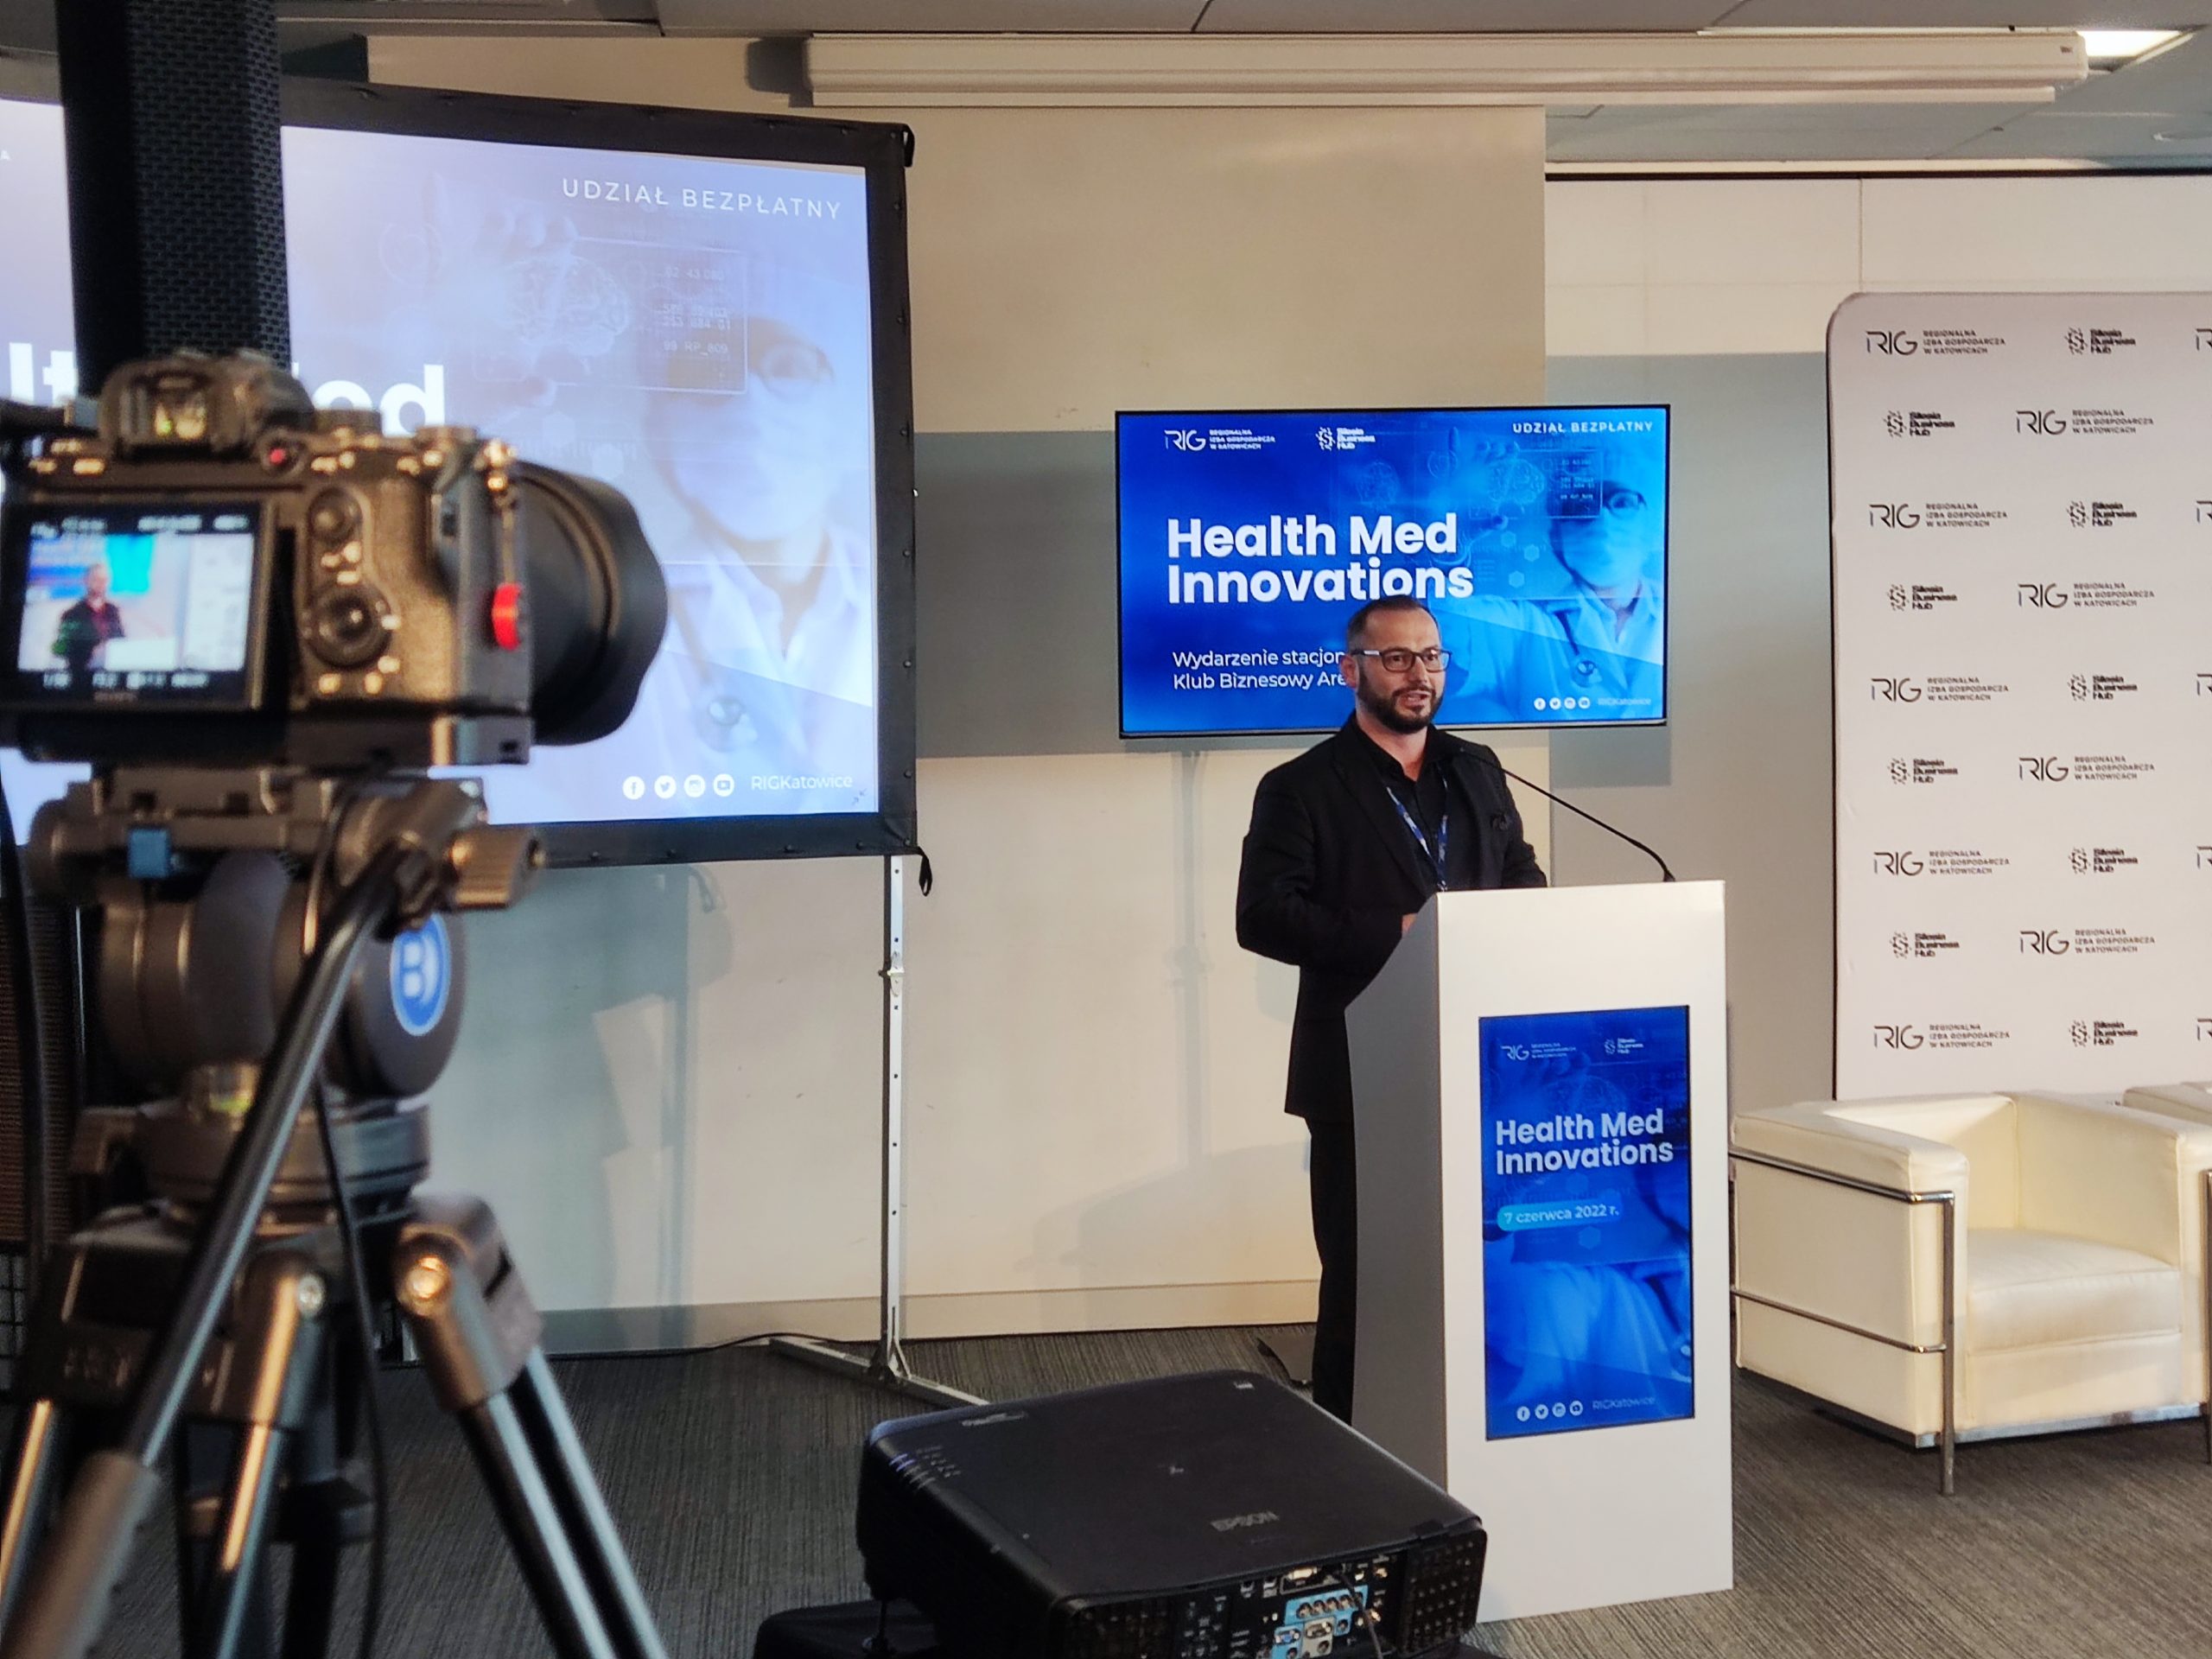 Biznes medyczny i rynku zdrowia – pierwsze spotkanie HMI w Zabrzańskiej Dolinie Medycznej